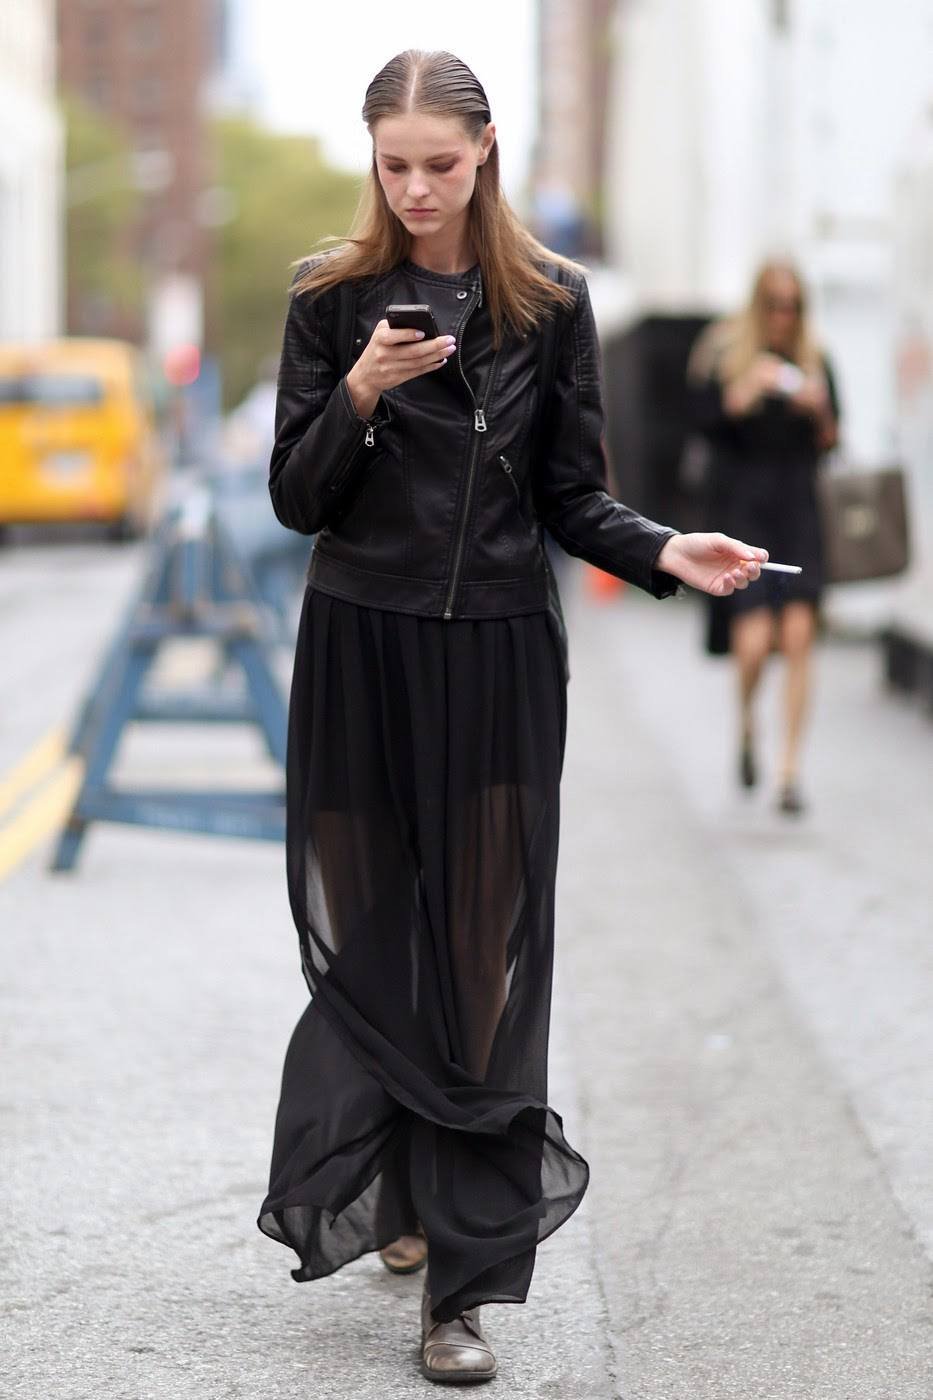 Черная прозрачная юбка. Косуха с длинным платьем. Косуха с длинной юбкой. Длинная юбка с кожаной курткой. Прозрачная юбка.